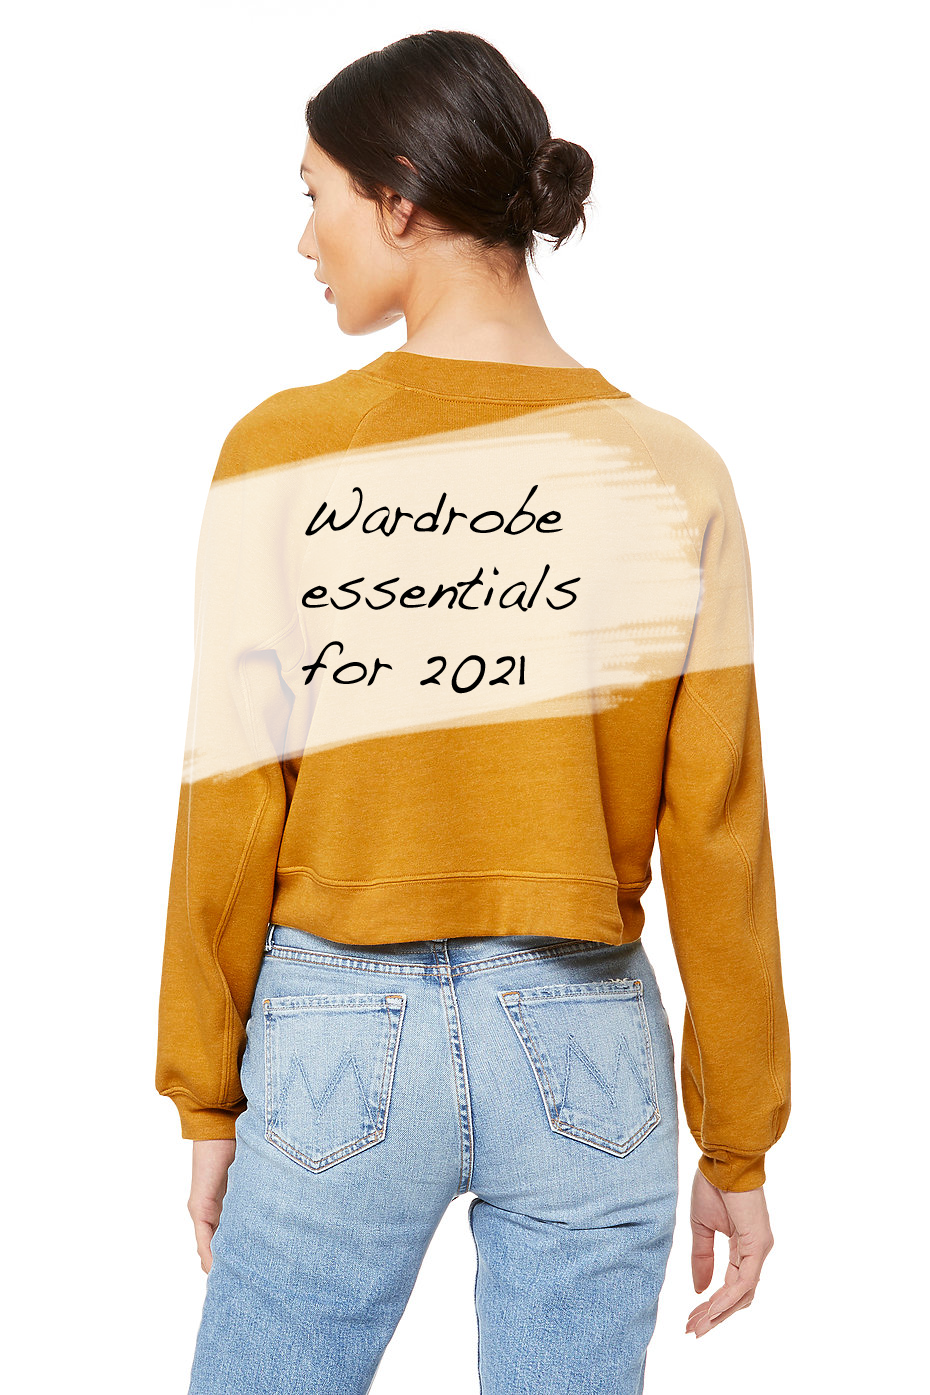 3 Wardrobe Essentials for Ladies in 2021